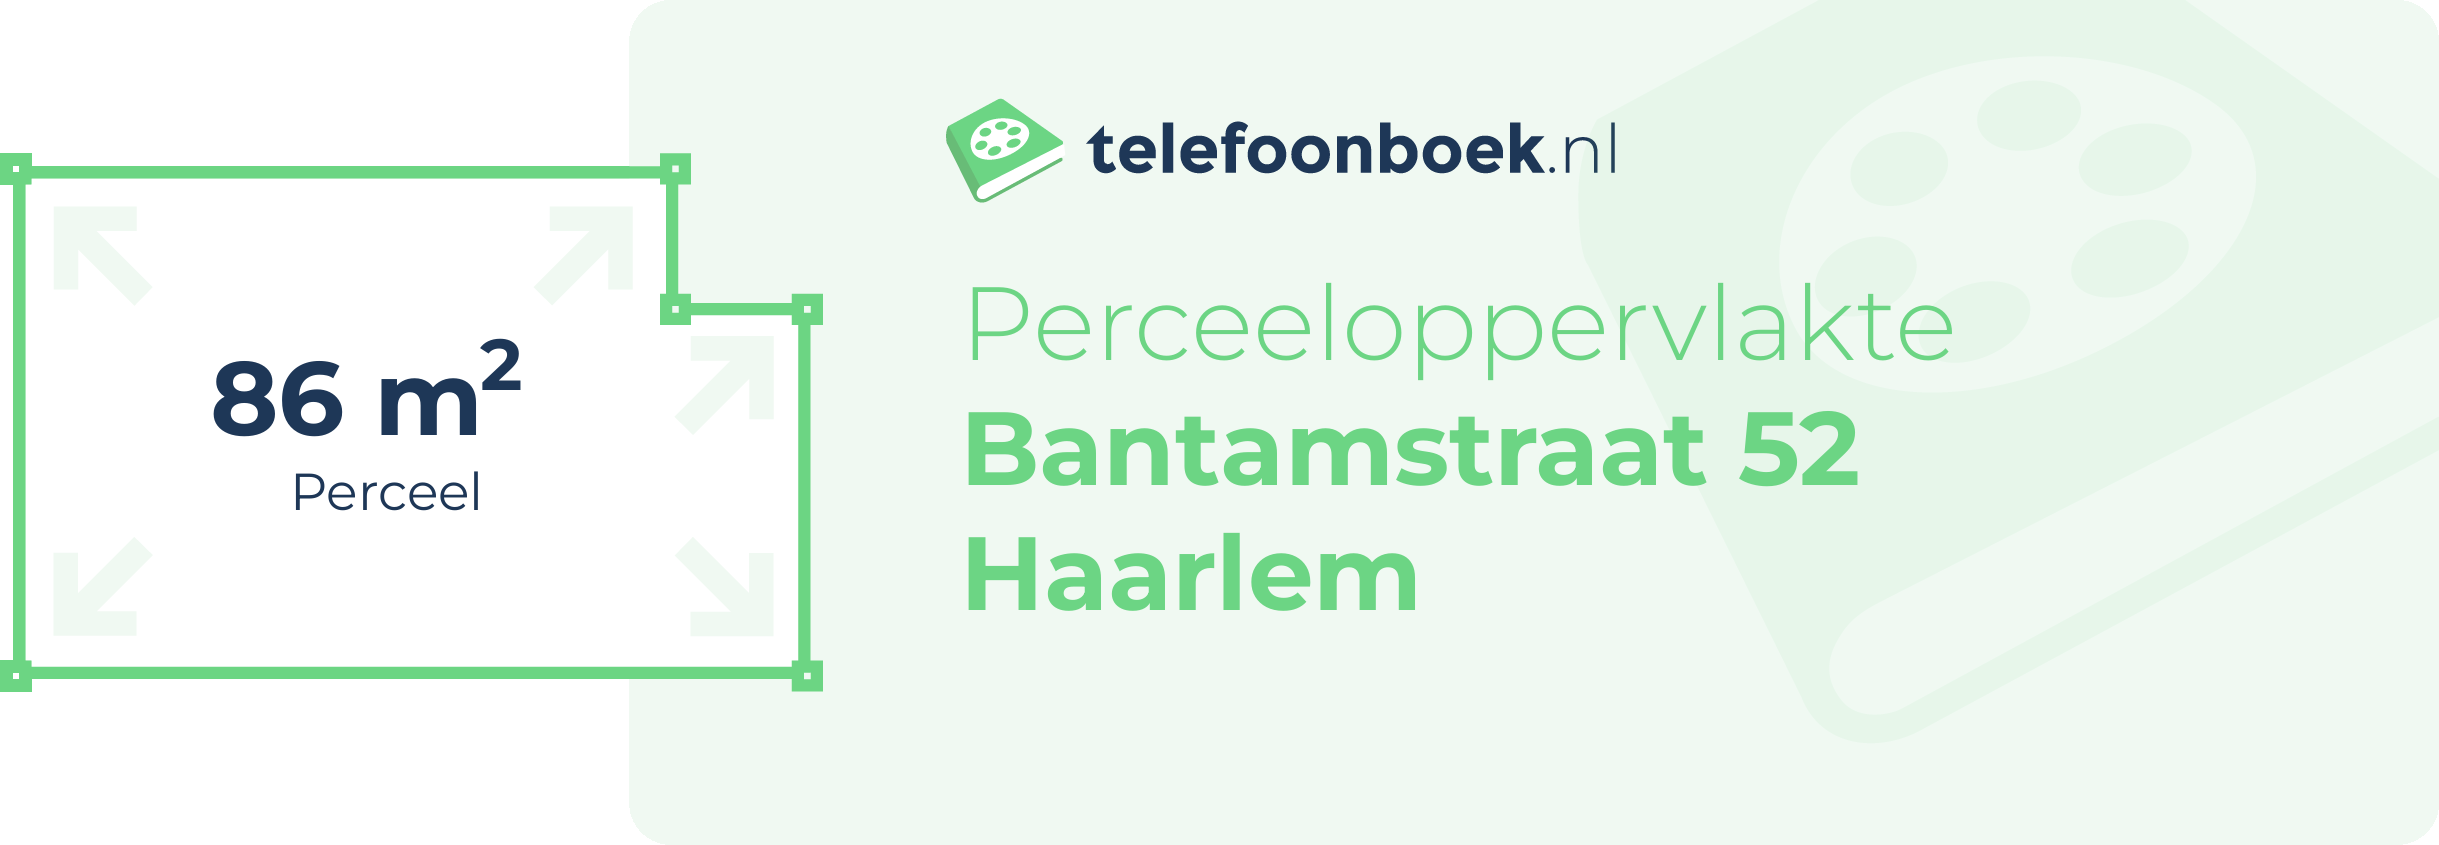 Perceeloppervlakte Bantamstraat 52 Haarlem